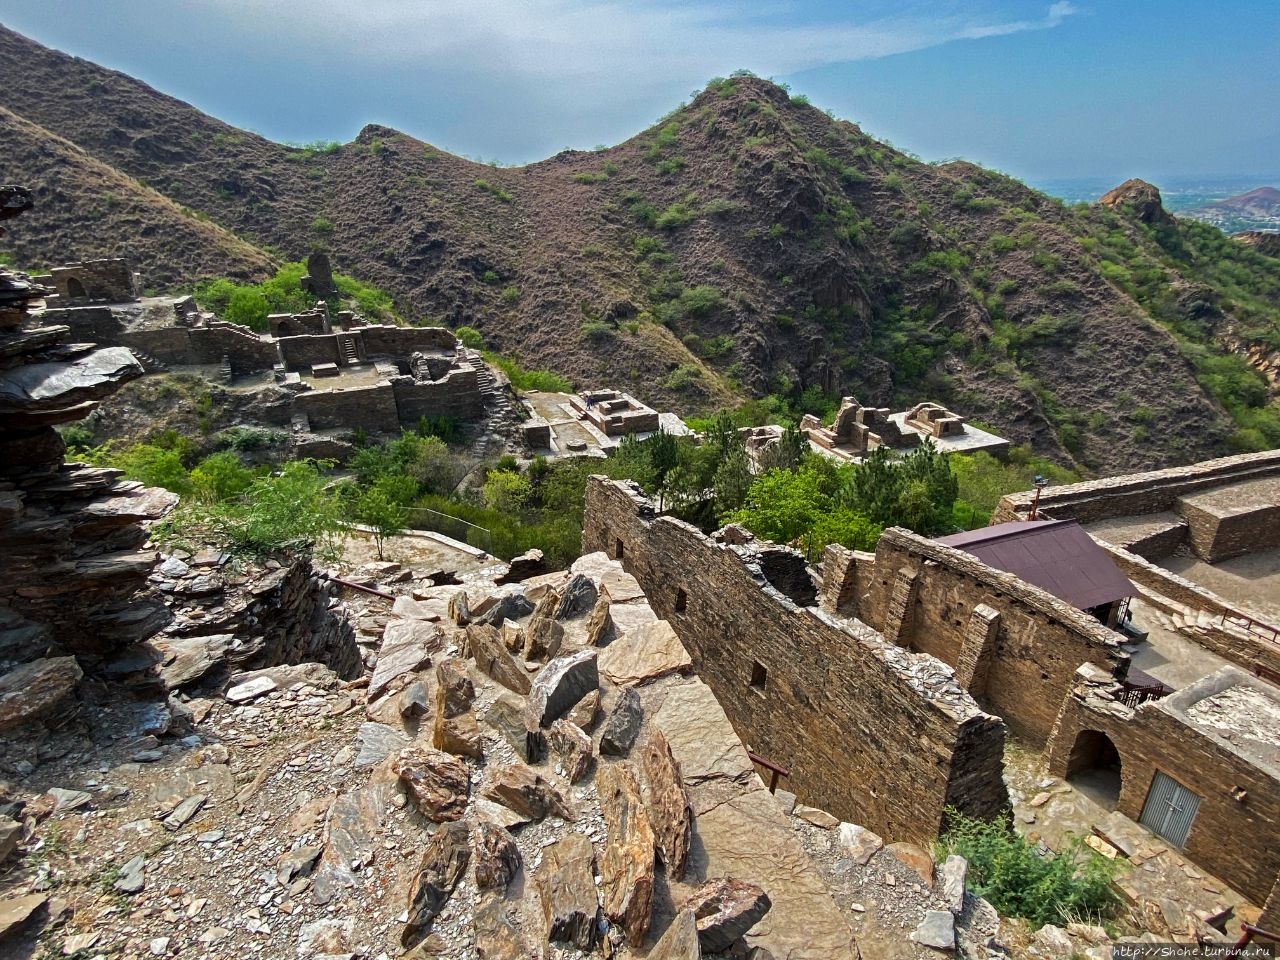 Буддистское наследие Пакистана. Монастырь Тахти-Бахи в +41°С